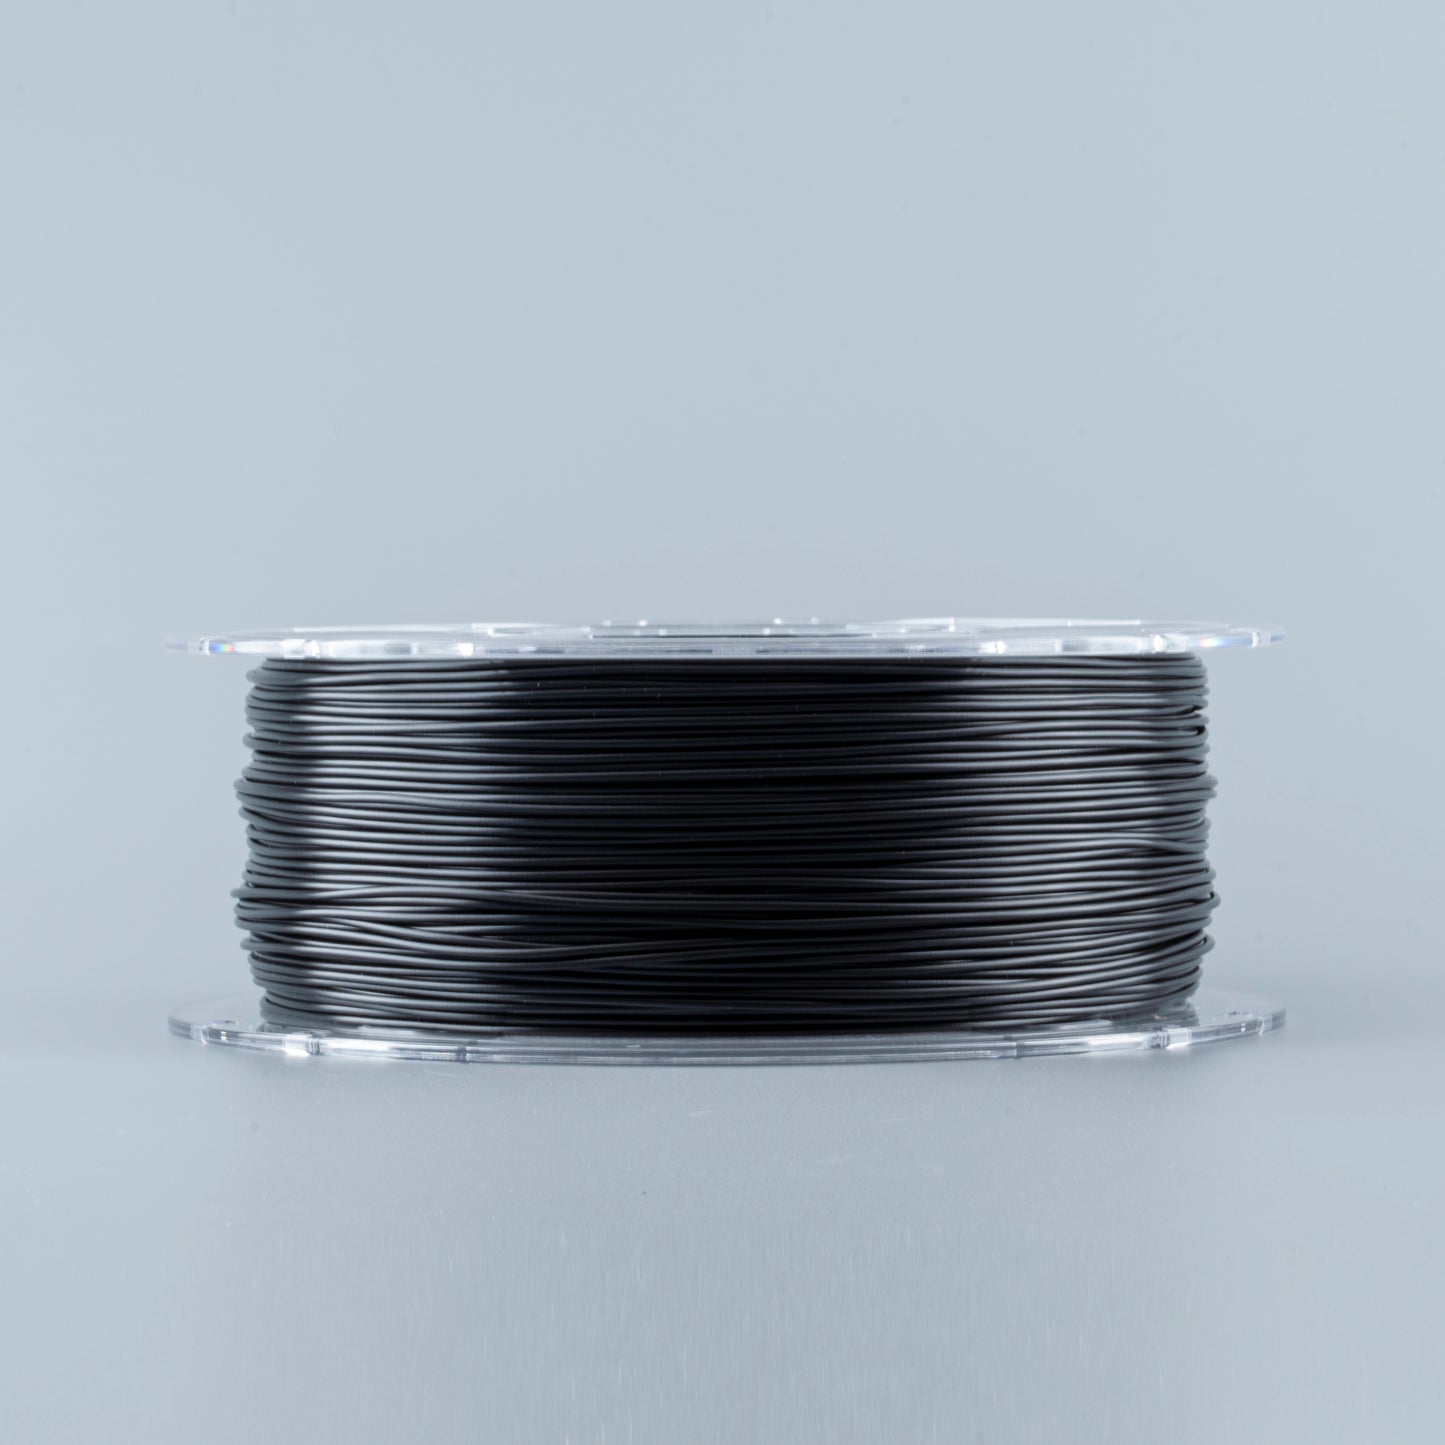 Mayrc PETG 3D Printer Filament 1.75mm Material for 3D Printers and 3D Pens Hot Sale Black Color PETG 3D Printing Materials